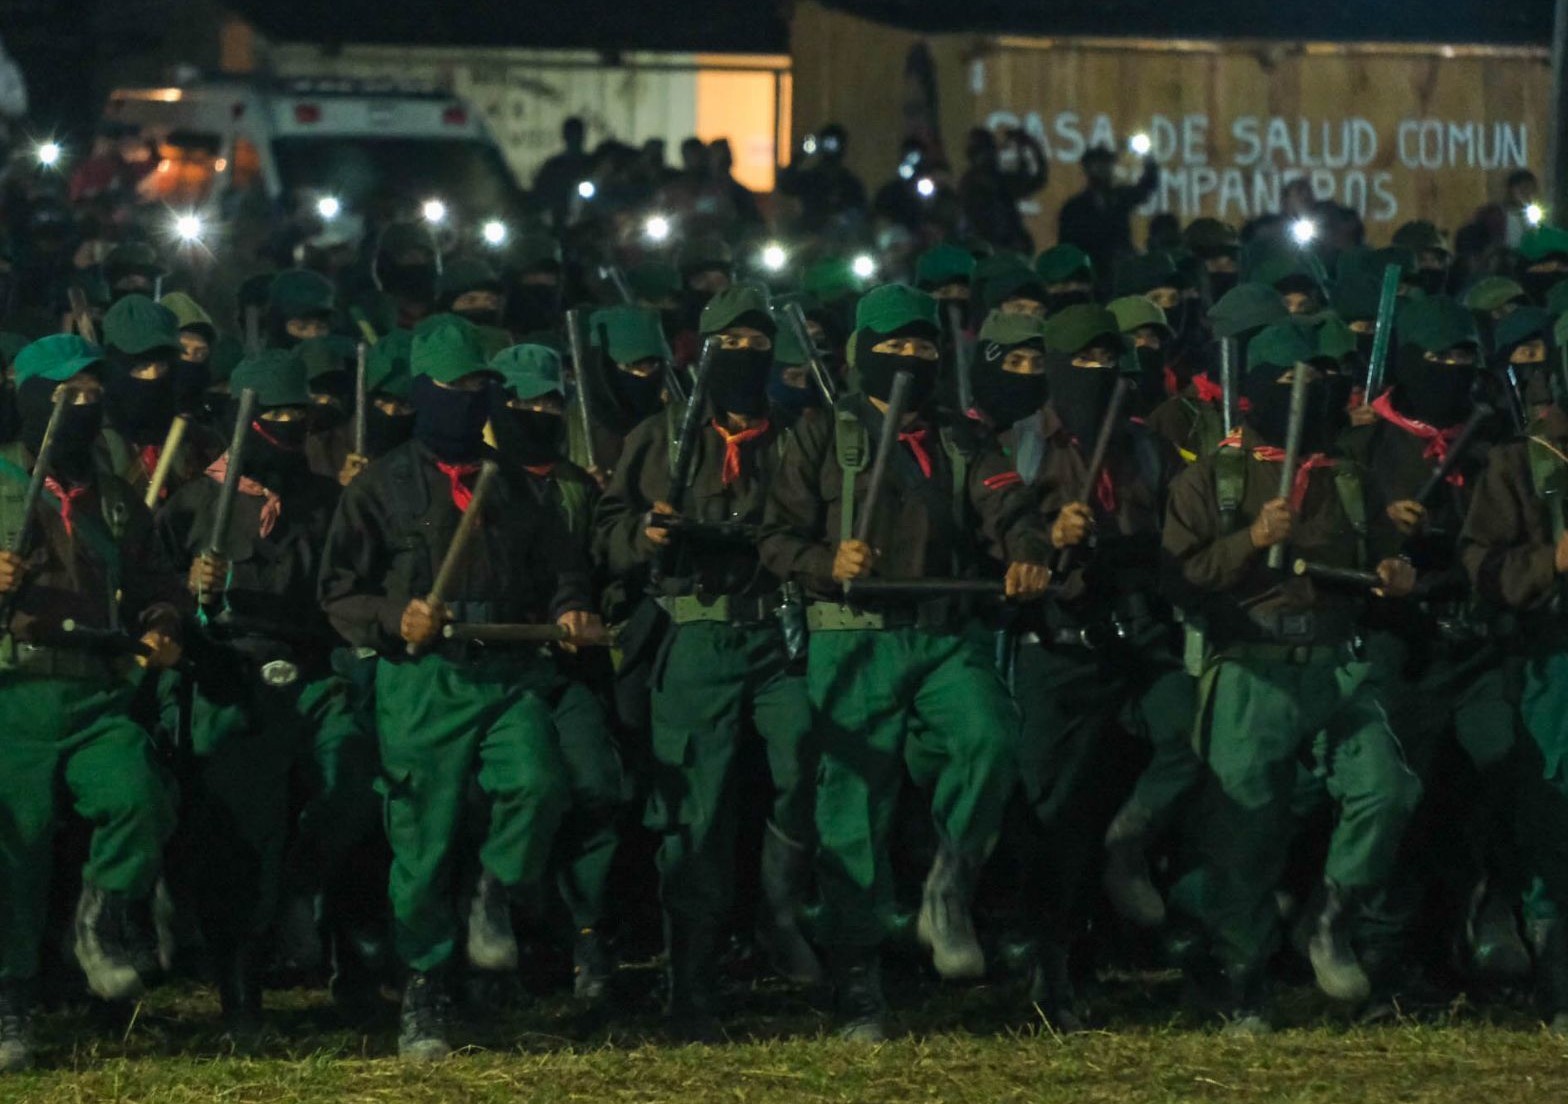 EZLN celebra 30 años y afirma: “la propiedad debe de ser del pueblo»